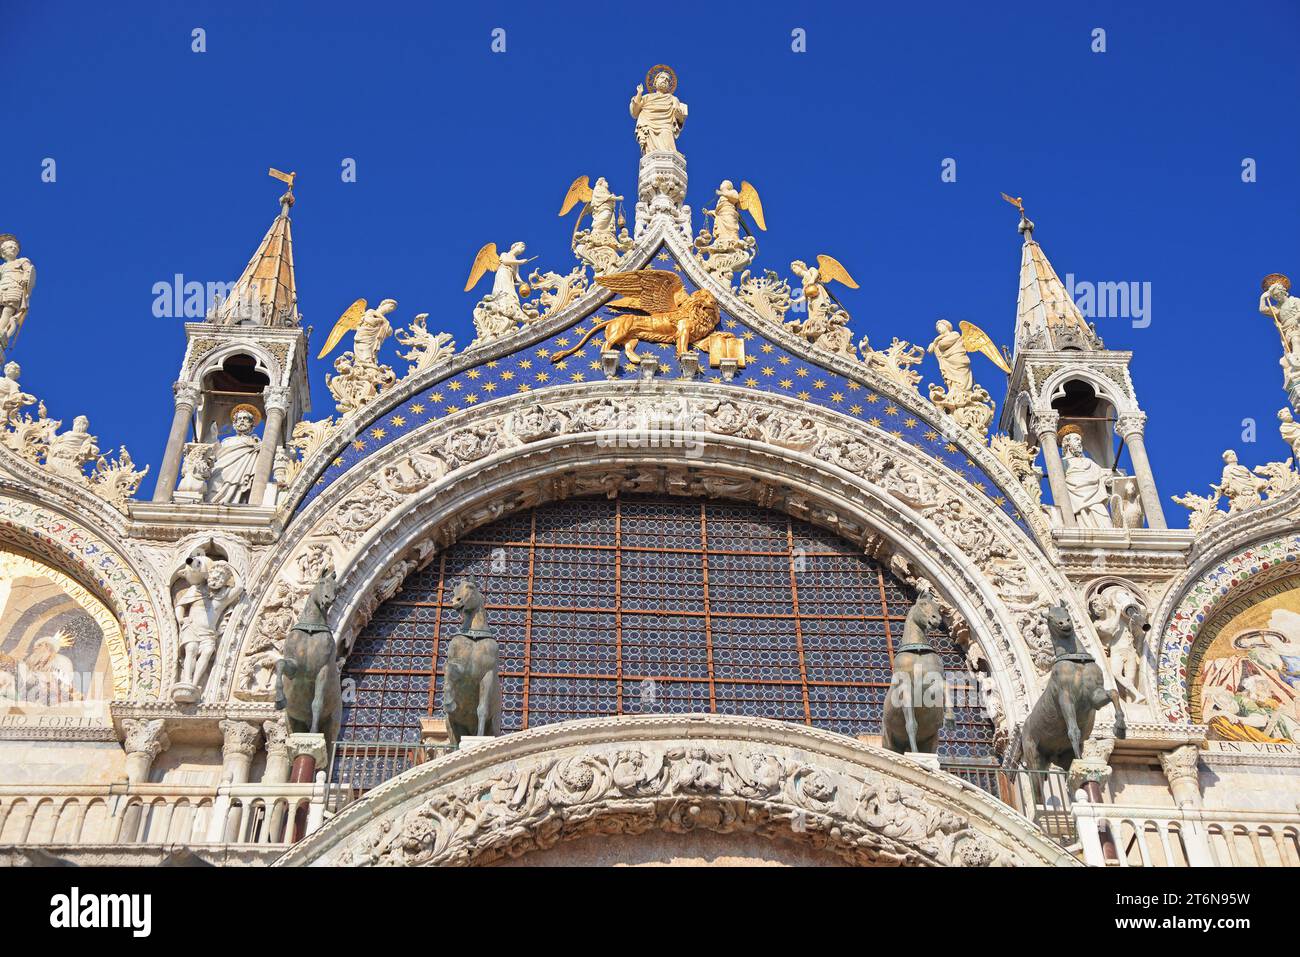 Wunderschöne Kunstwerke zur Dekoration der Patriarchalkirche Markusdom (Basilica Cattedrale Patriarcale di San Marco), Venedig, Italien Stockfoto